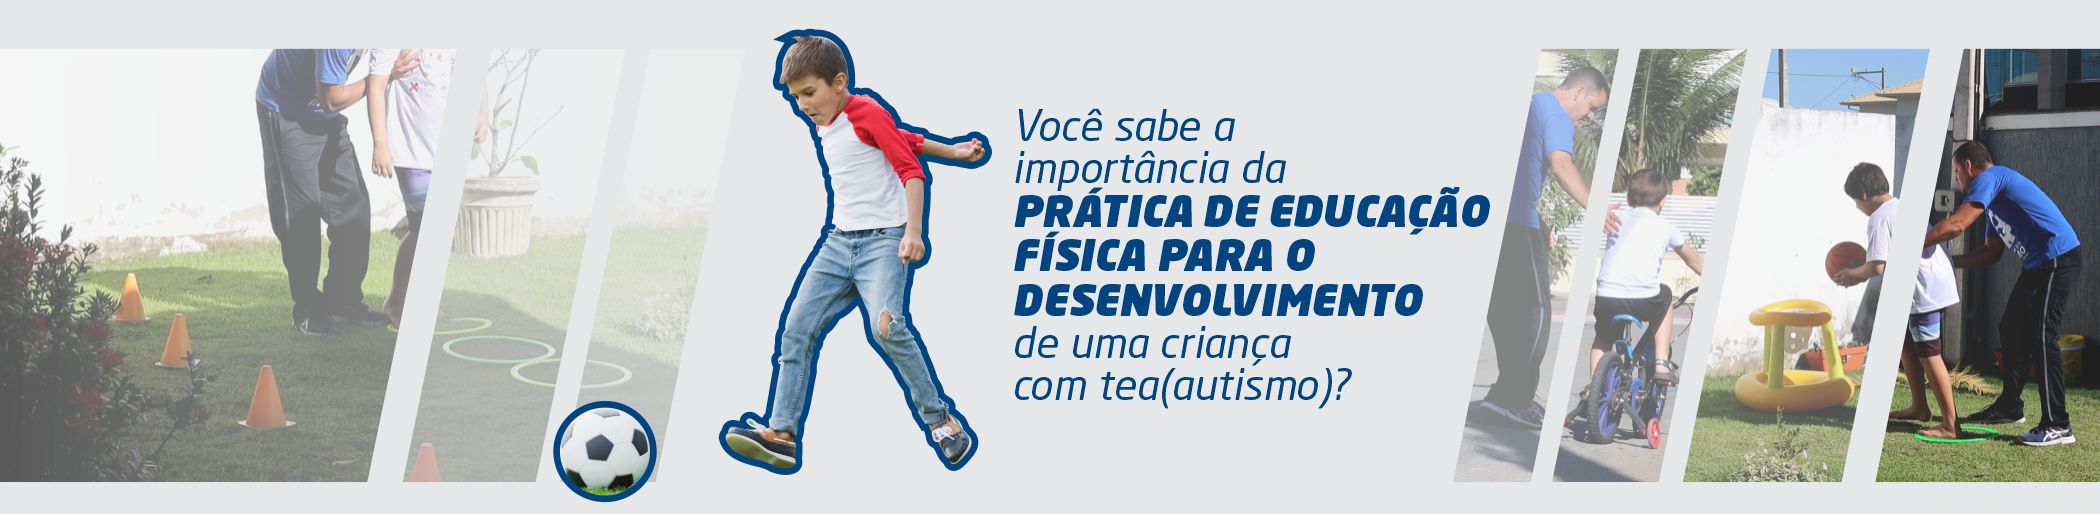 Você sabe a importância da prática de educação física para o desenvolvimento de uma criança com tea (autismo)?